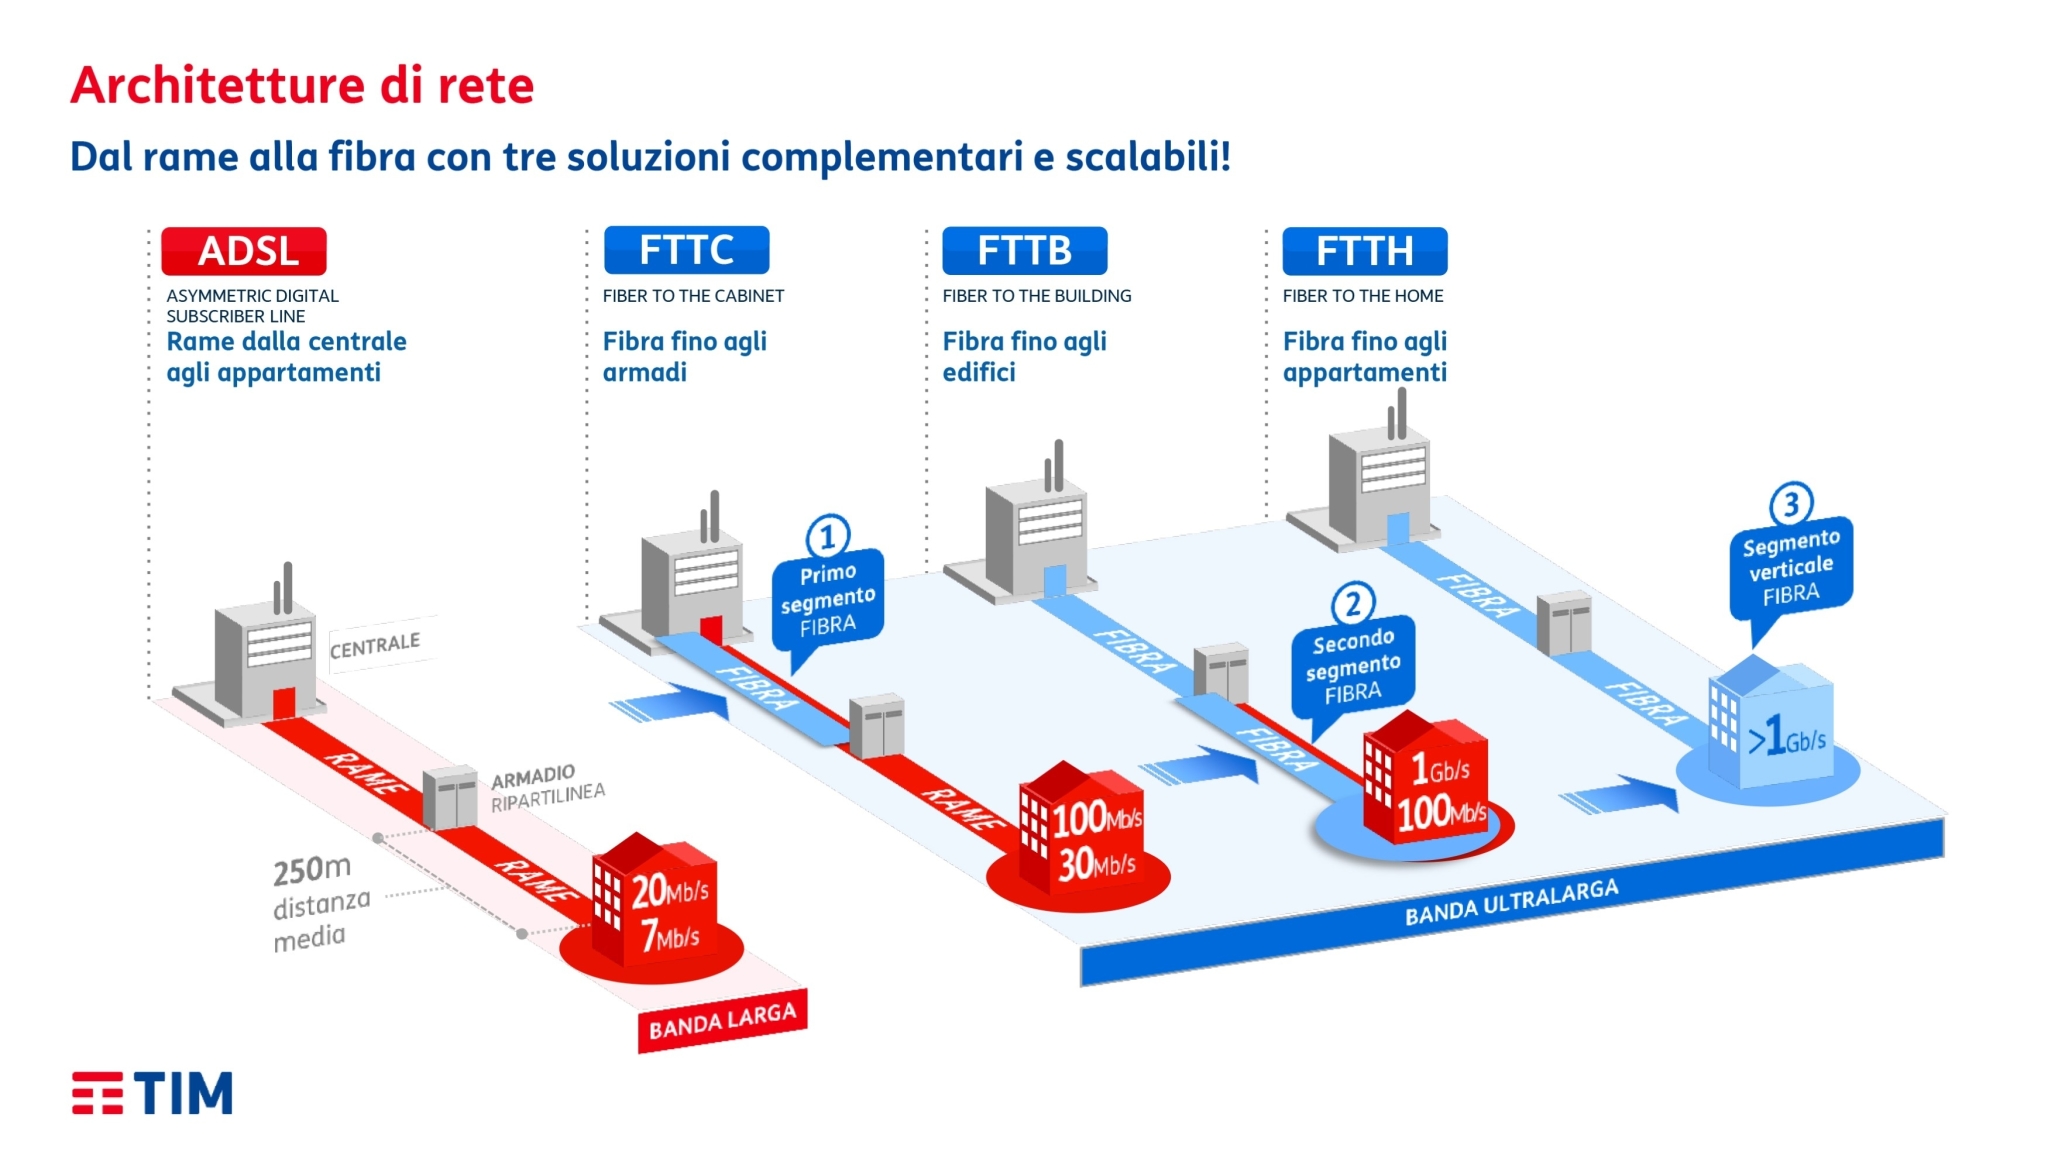 Schema delle architetture di rete TIM: ADSL, FTTC, FTTB e FTTH